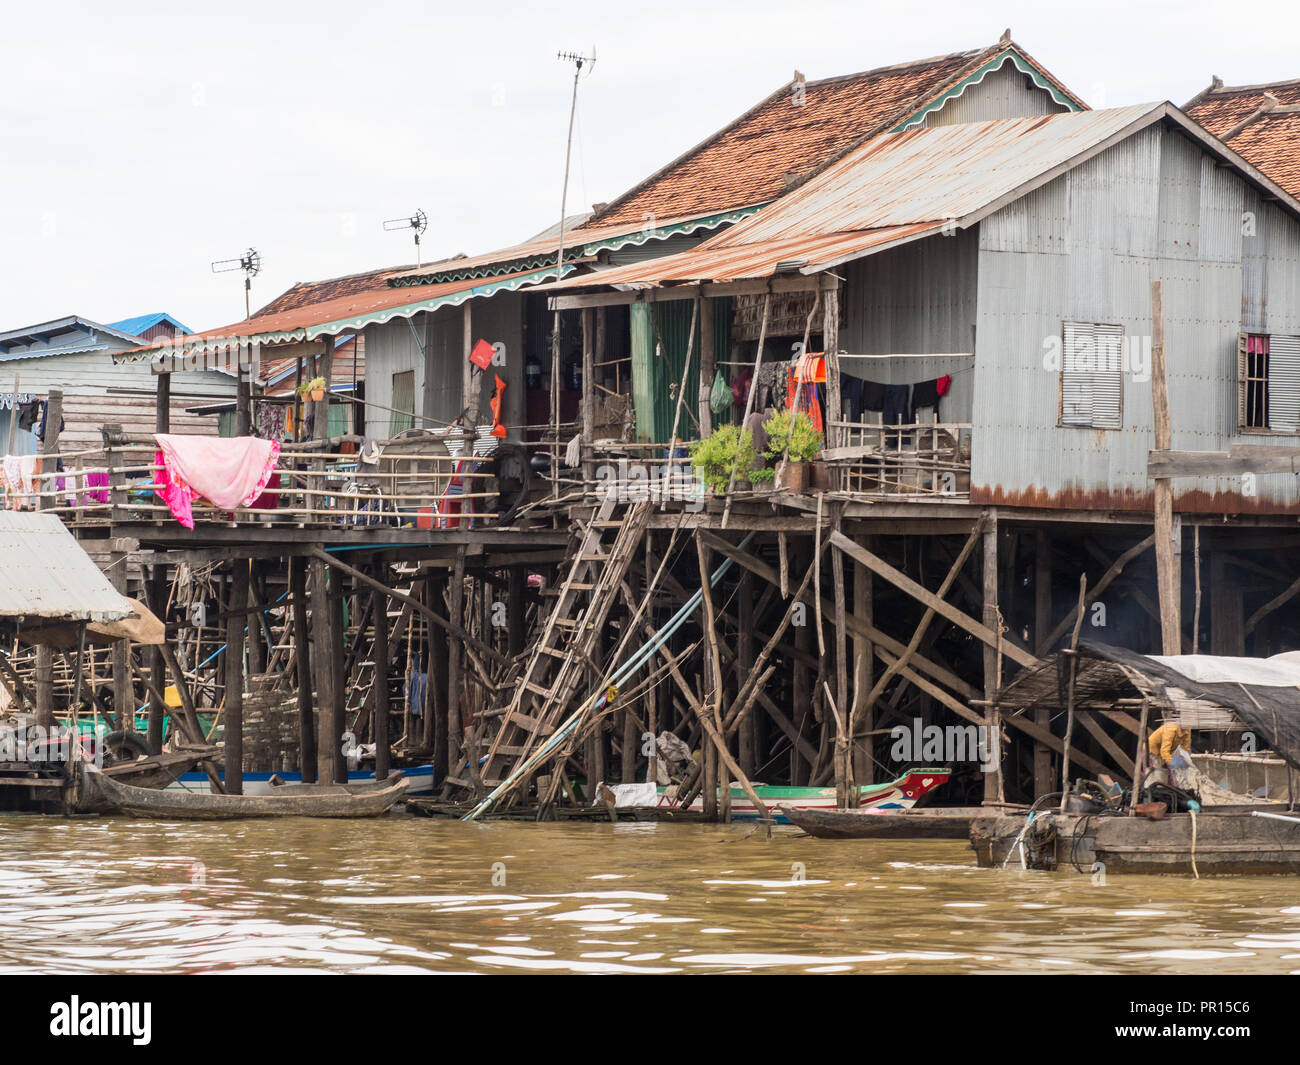 Maisons sur pilotis, Kompong Khleang, village flottant sur le lac Tonle Sap, Cambodge, Indochine, Asie du Sud, Asie Banque D'Images